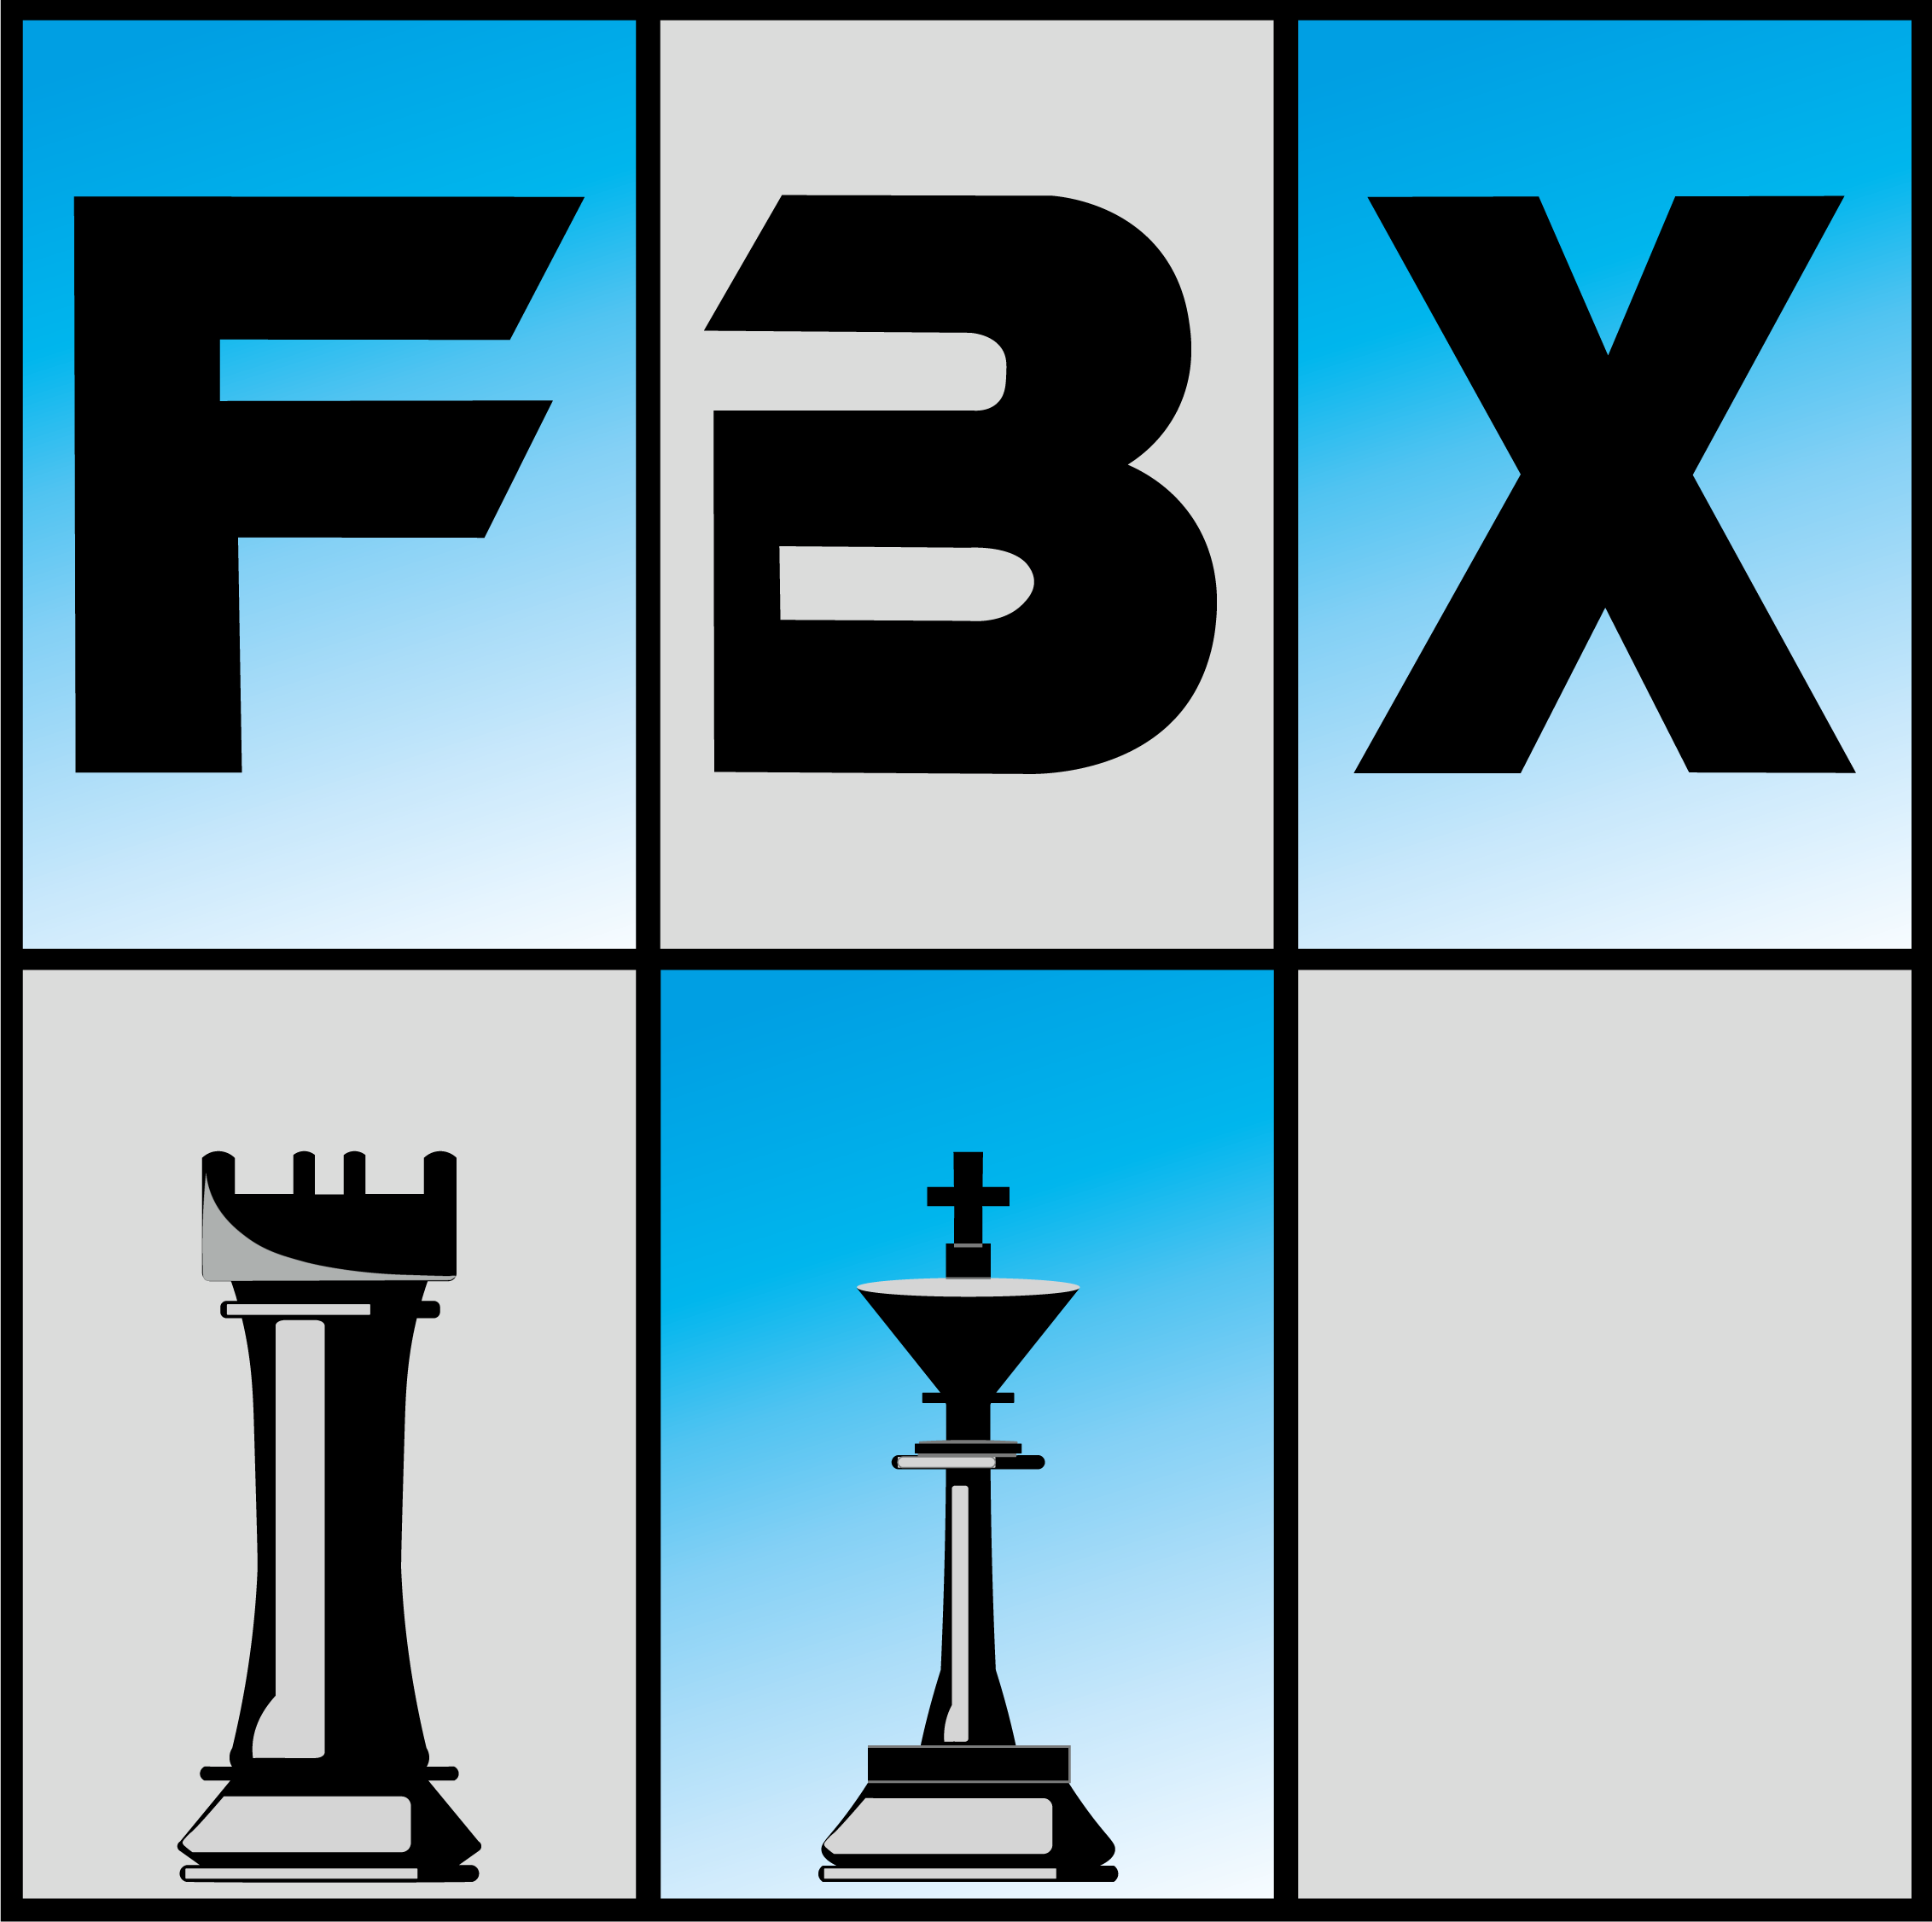 Federação Baiana De Xadrez - FBX